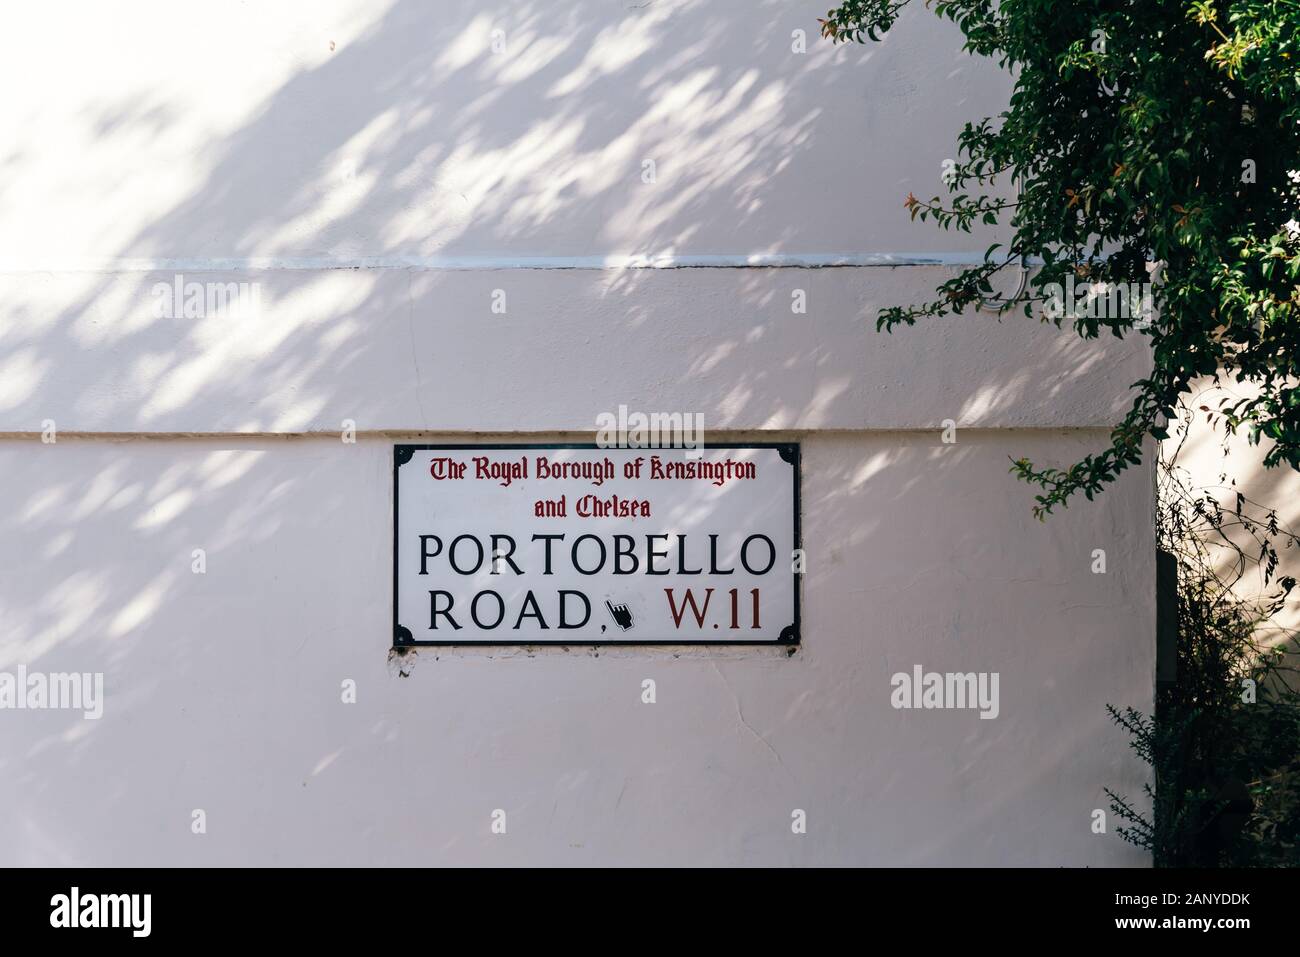 Londres, Reino Unido - 15 de mayo de 2019: el nombre de la calle Portobello Road sign sobre pared blanca Foto de stock